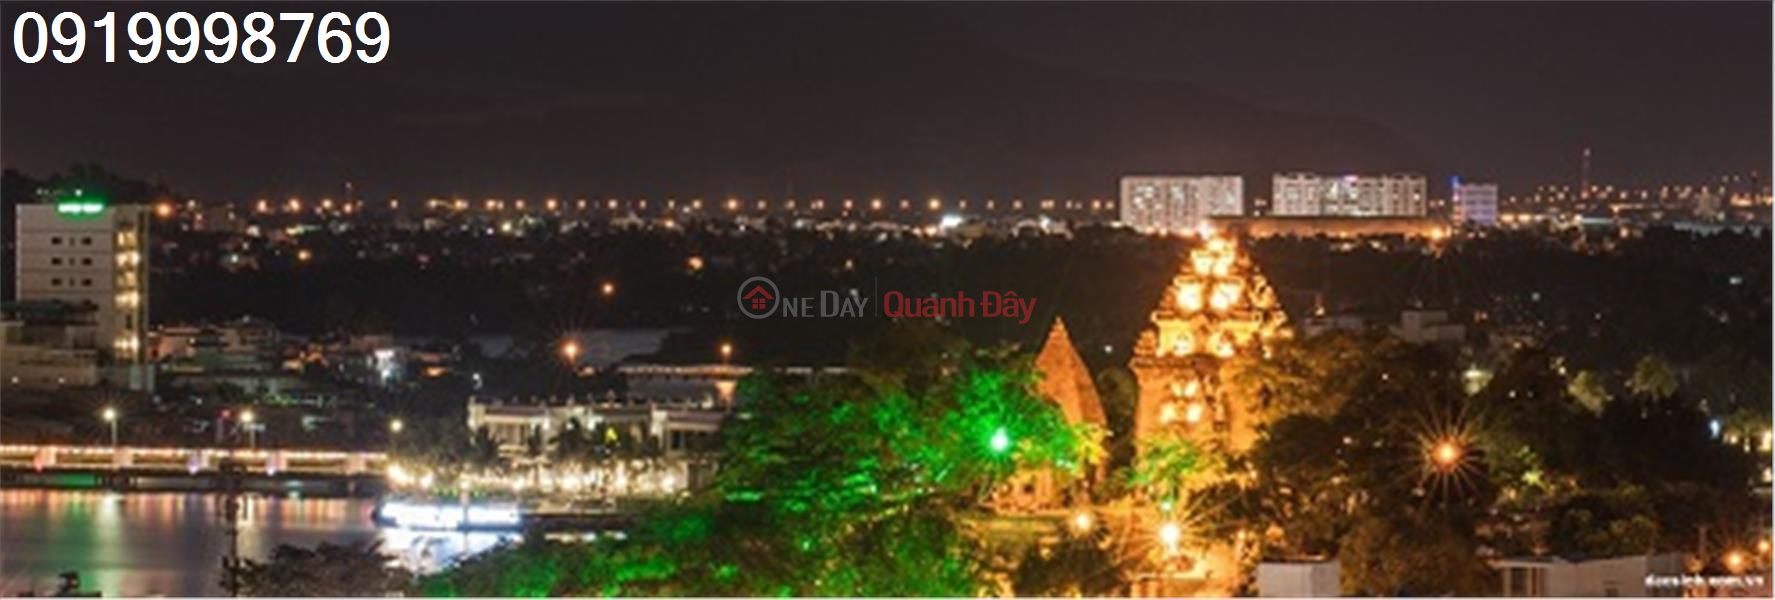 Property Search Vietnam | OneDay | Nhà ở, Niêm yết bán, Chuyển nhượng mảnh đất đất tại thôn Phú Ân Nam 2, Diên An, Diên Khánh